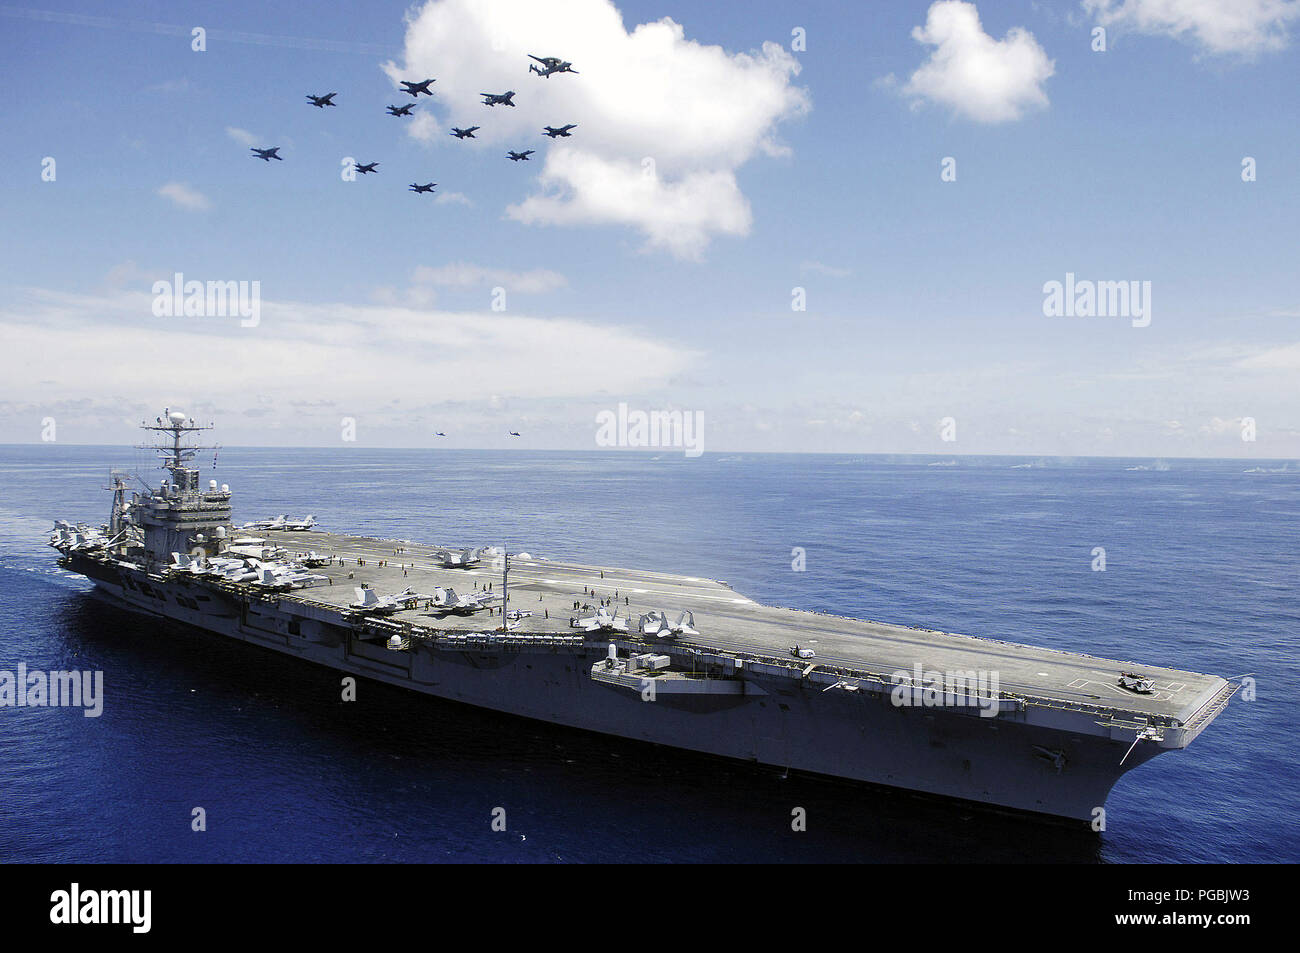 Nel Mare della Cina del Sud, lo US Navy (USN) Nimitz-class portaerei USS ABRAHAM LINCOLN (CVN 72) e aeromobili assegnati al vettore Air Wing due (CVW-2) eseguire una dimostrazione dell'antenna. Foto Stock